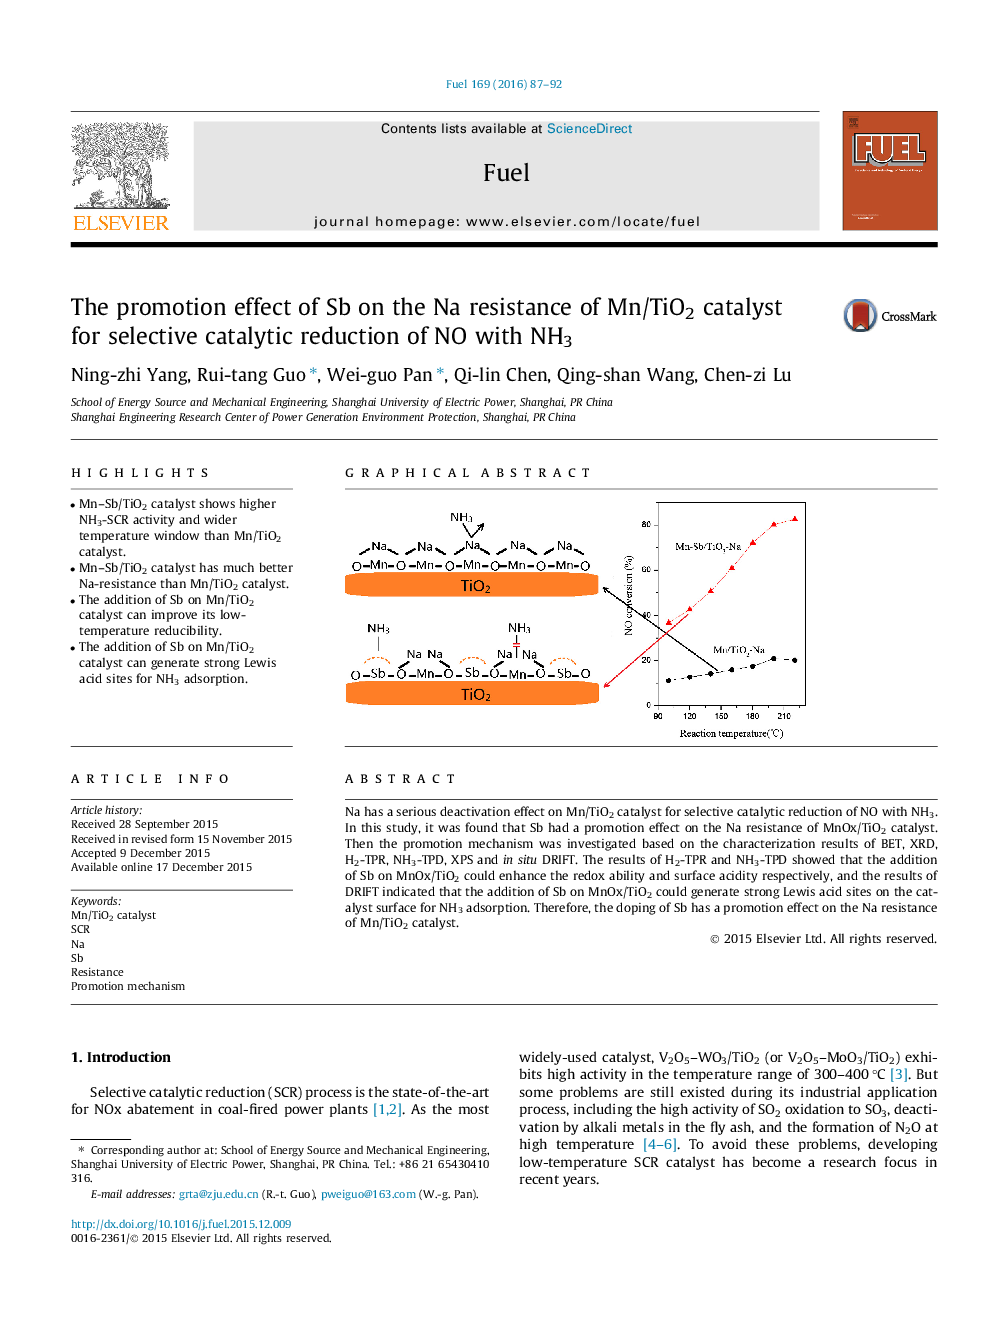 اثر ارتقاء Sb بر مقاومت Na کاتالیزور Mn/TiO2 برای کاهش کاتالیزوری انتخابی NO با NH3